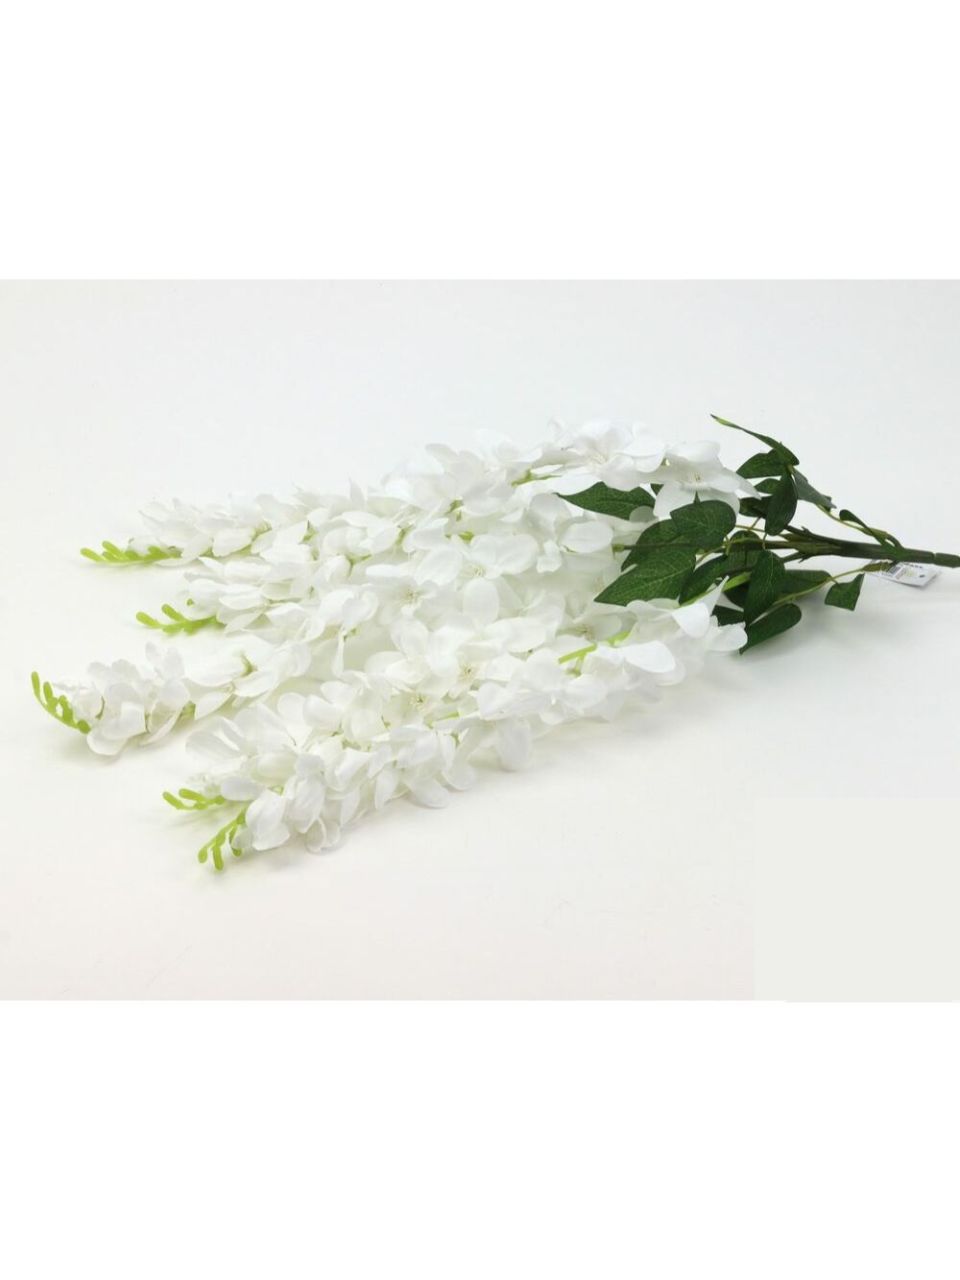 Fehér csüngős virágú selyem 60 cm